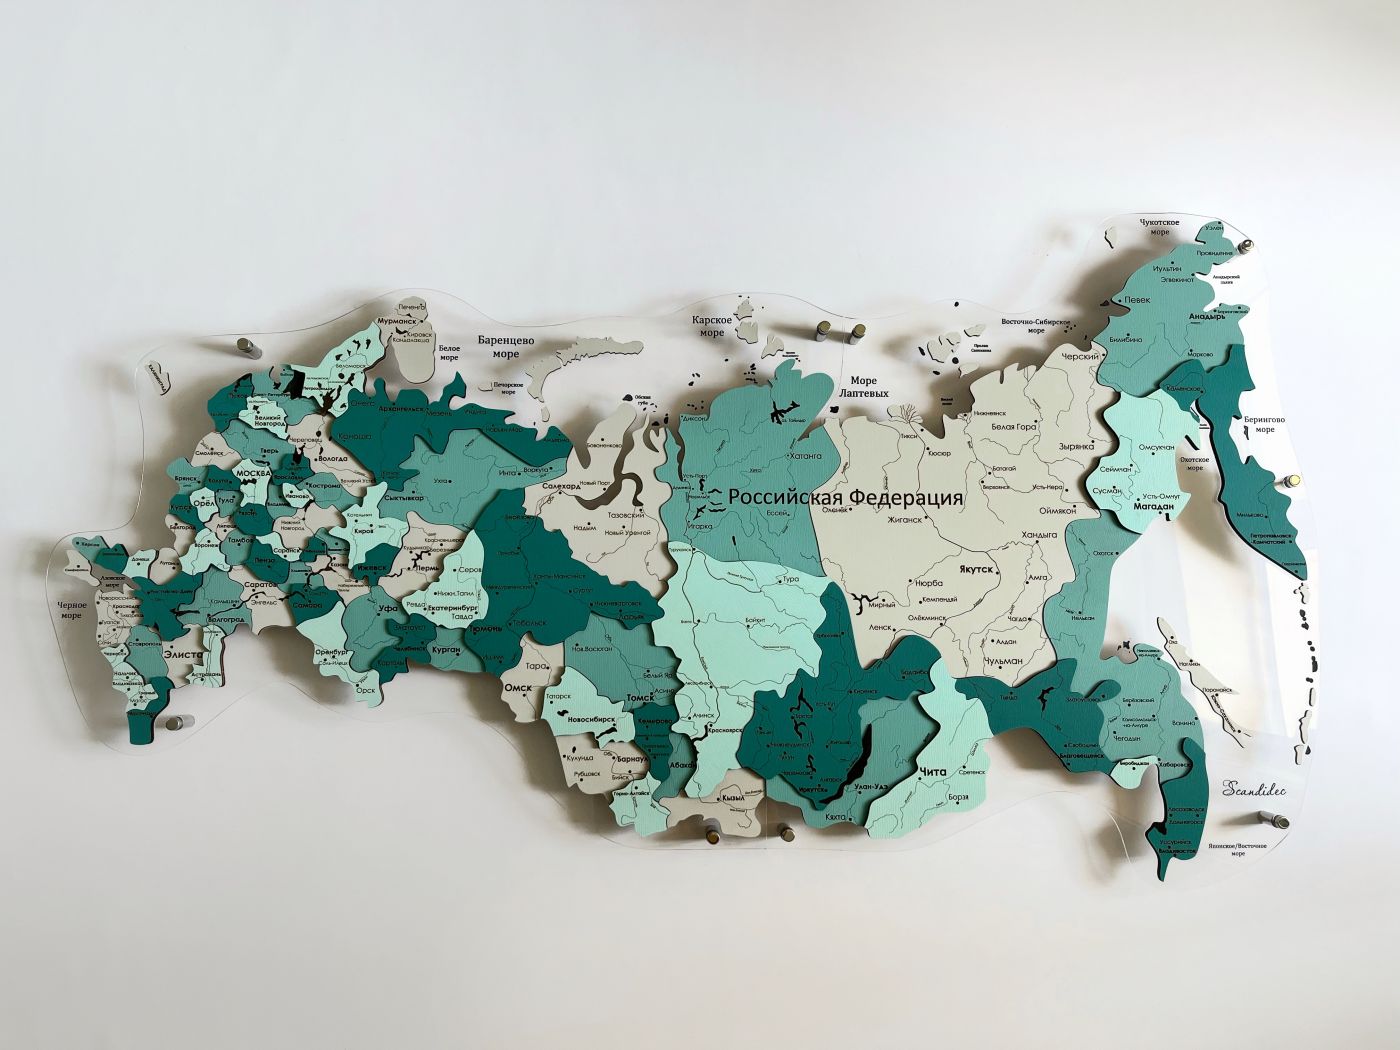 Цвет "Енисейск", Многоуровневая карта РОССИИ из дерева, на подложке из орг.стекла, на русском языке, с полной гравировкой, с черной гравировкой на орг.стекле